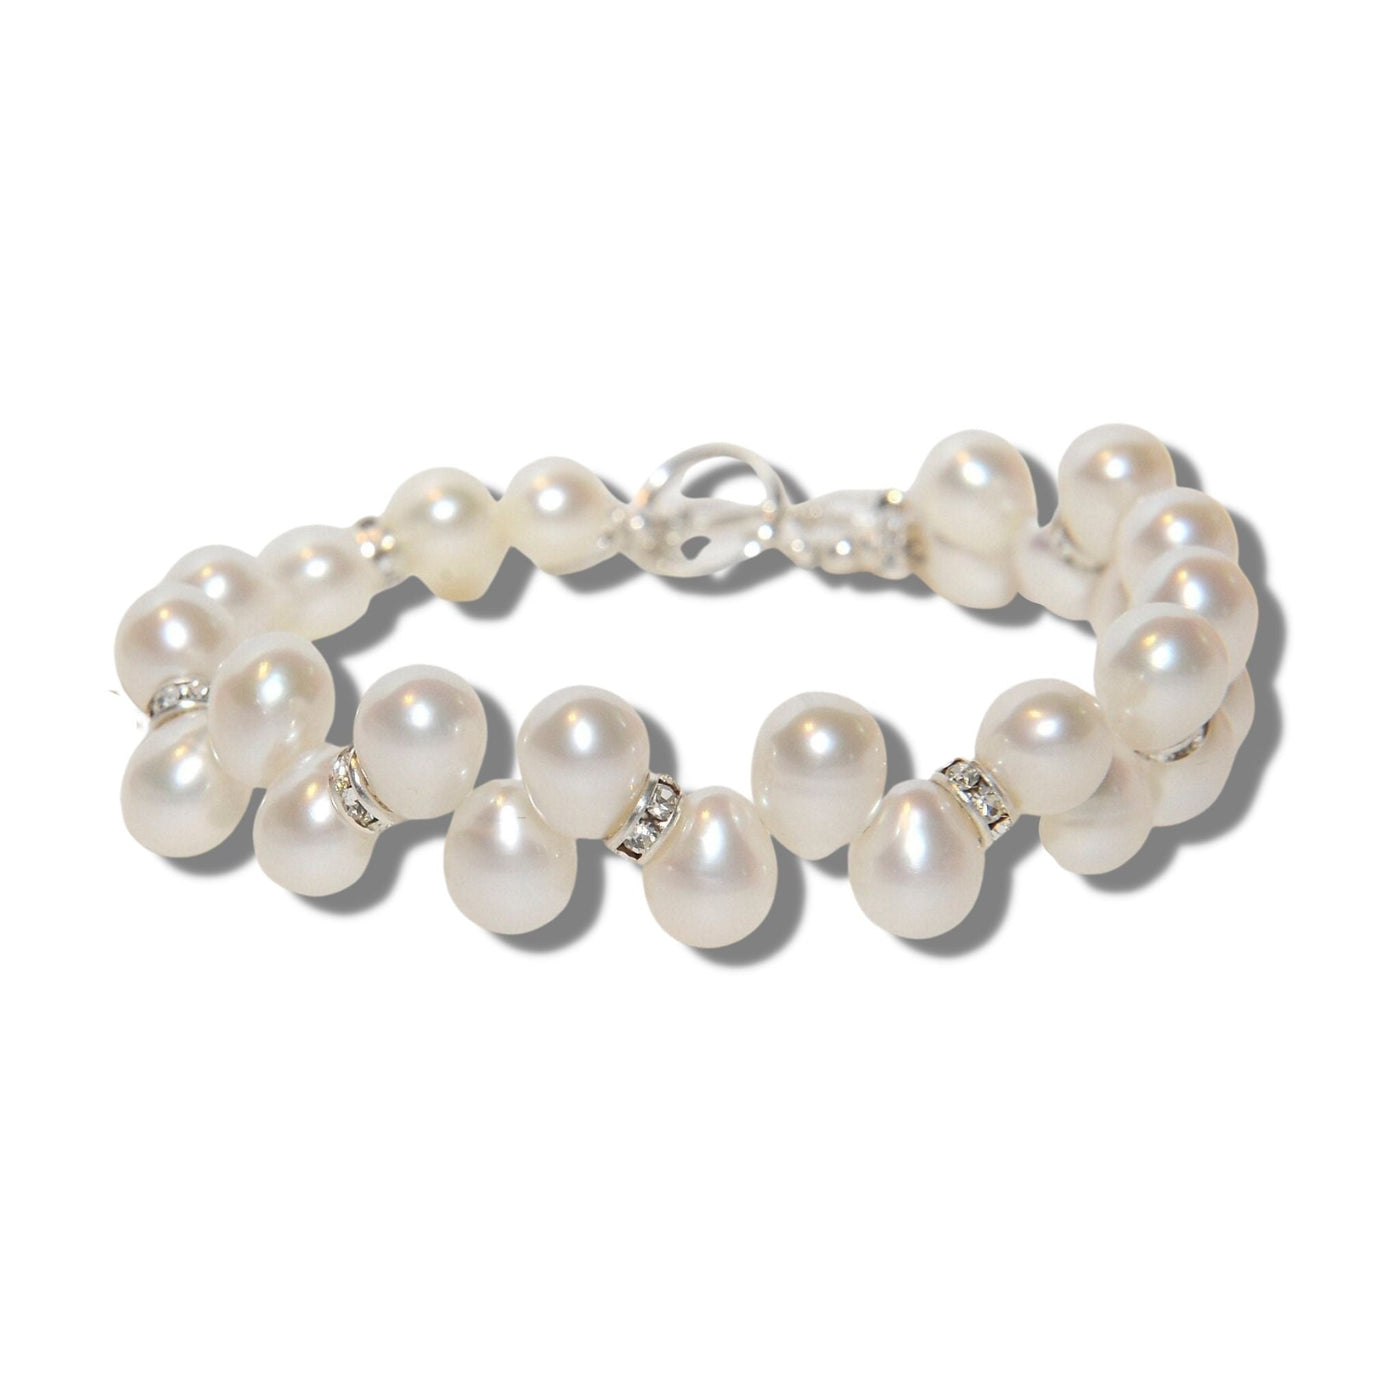 Pearl Twist Bracelet -Gold Or Silver